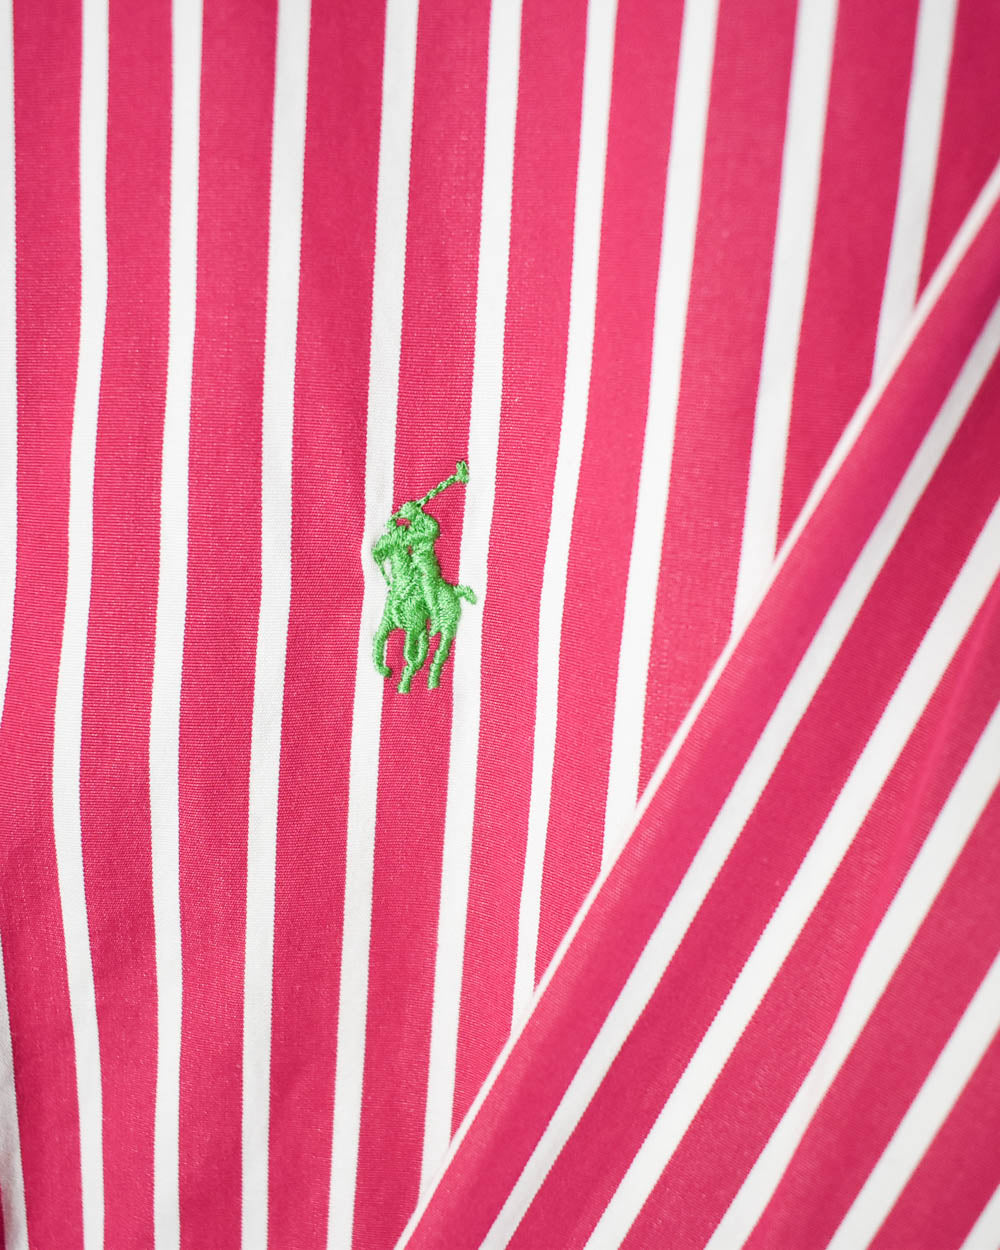 Pink Ralph Lauren Striped Shirt - Large